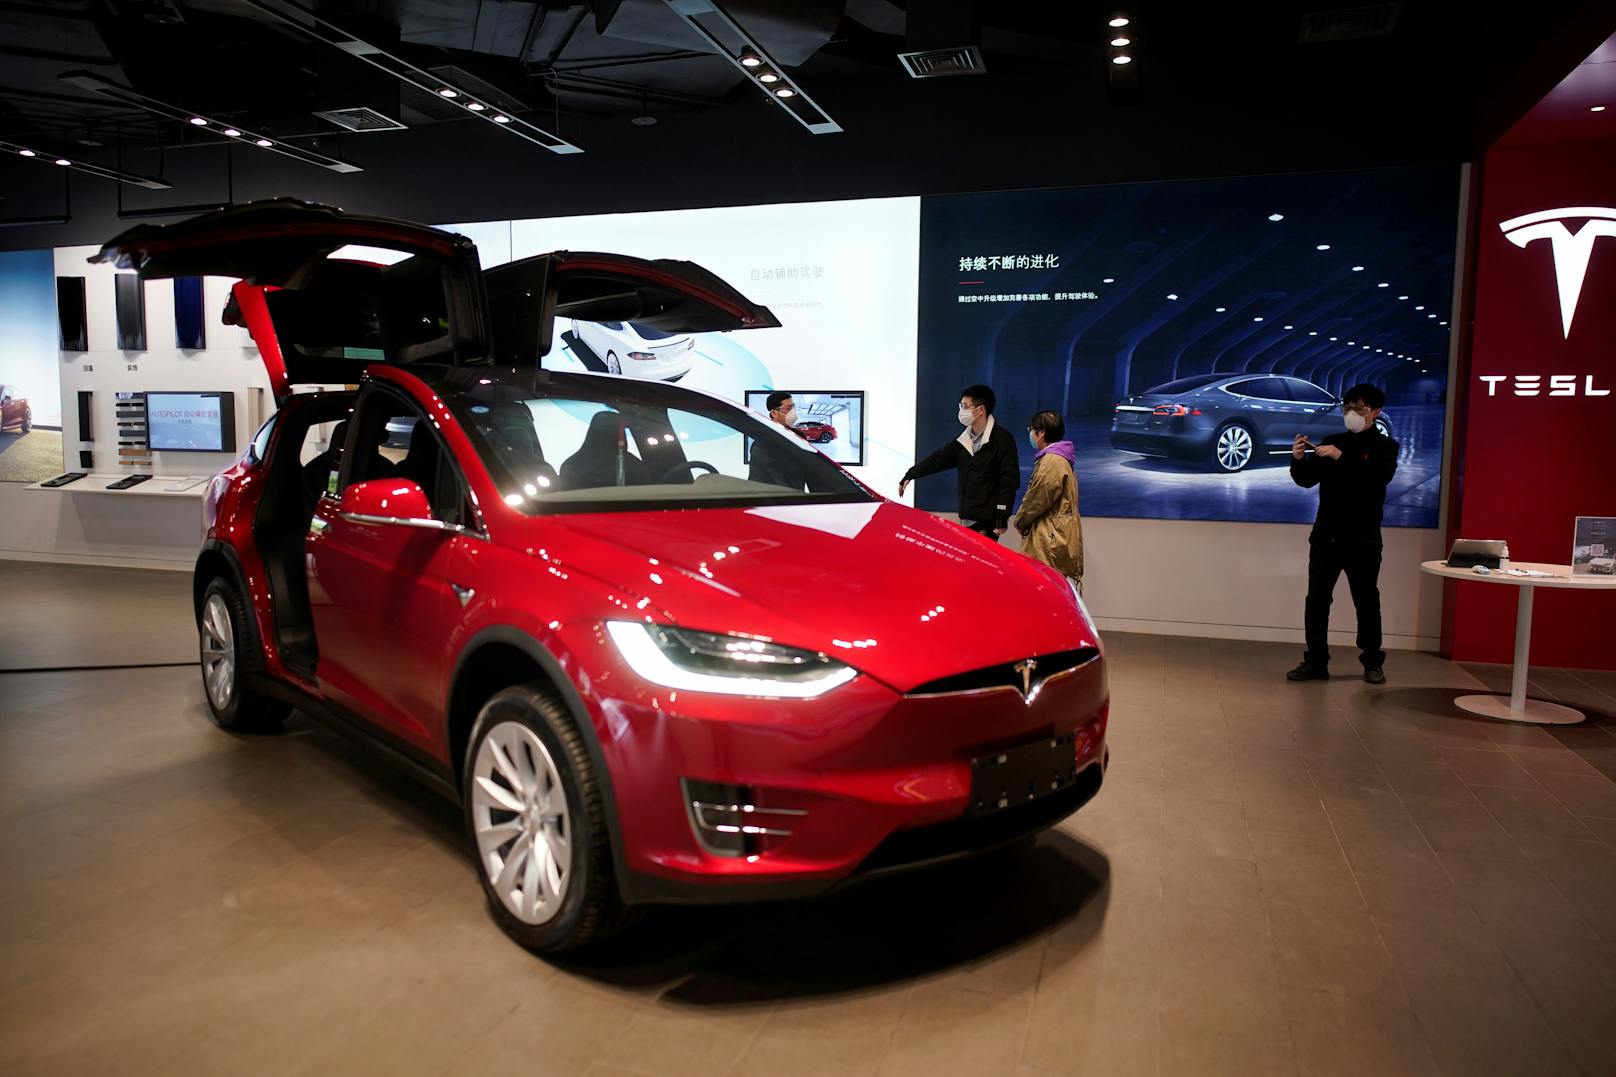 Trotz der Corona-Krise peilt Tesla für 2020 weiterhin einen Absatz von 500.000 Autos an.